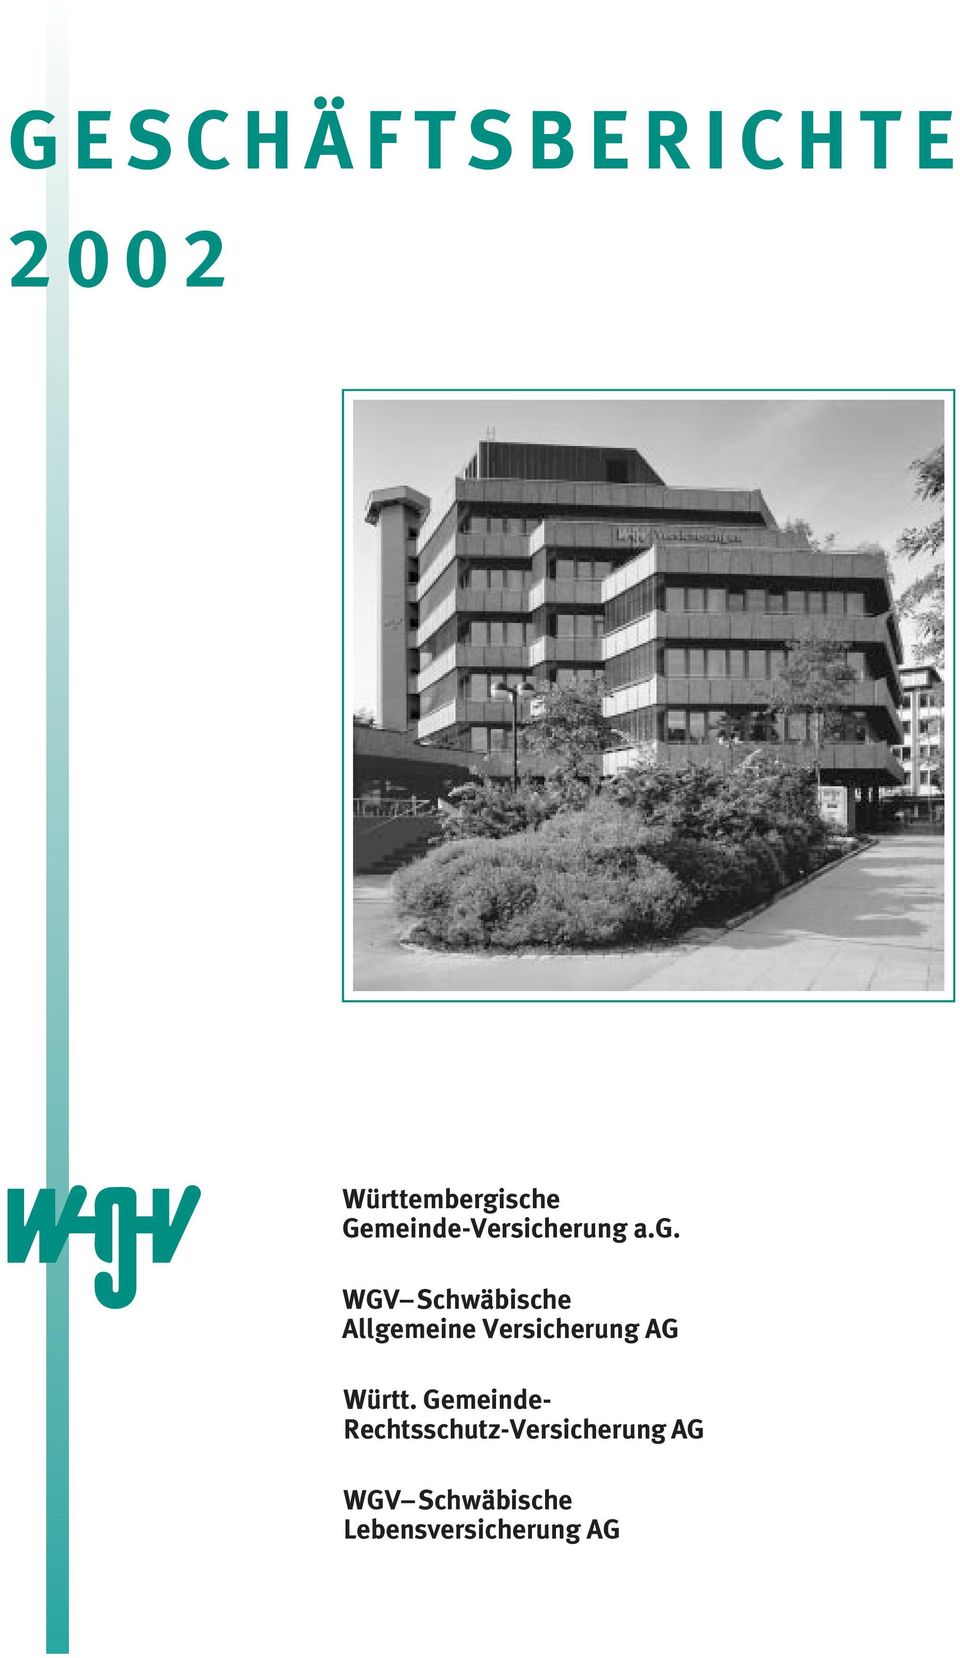 a.g. WGV Schwäbische Allgemeine Versicherung AG